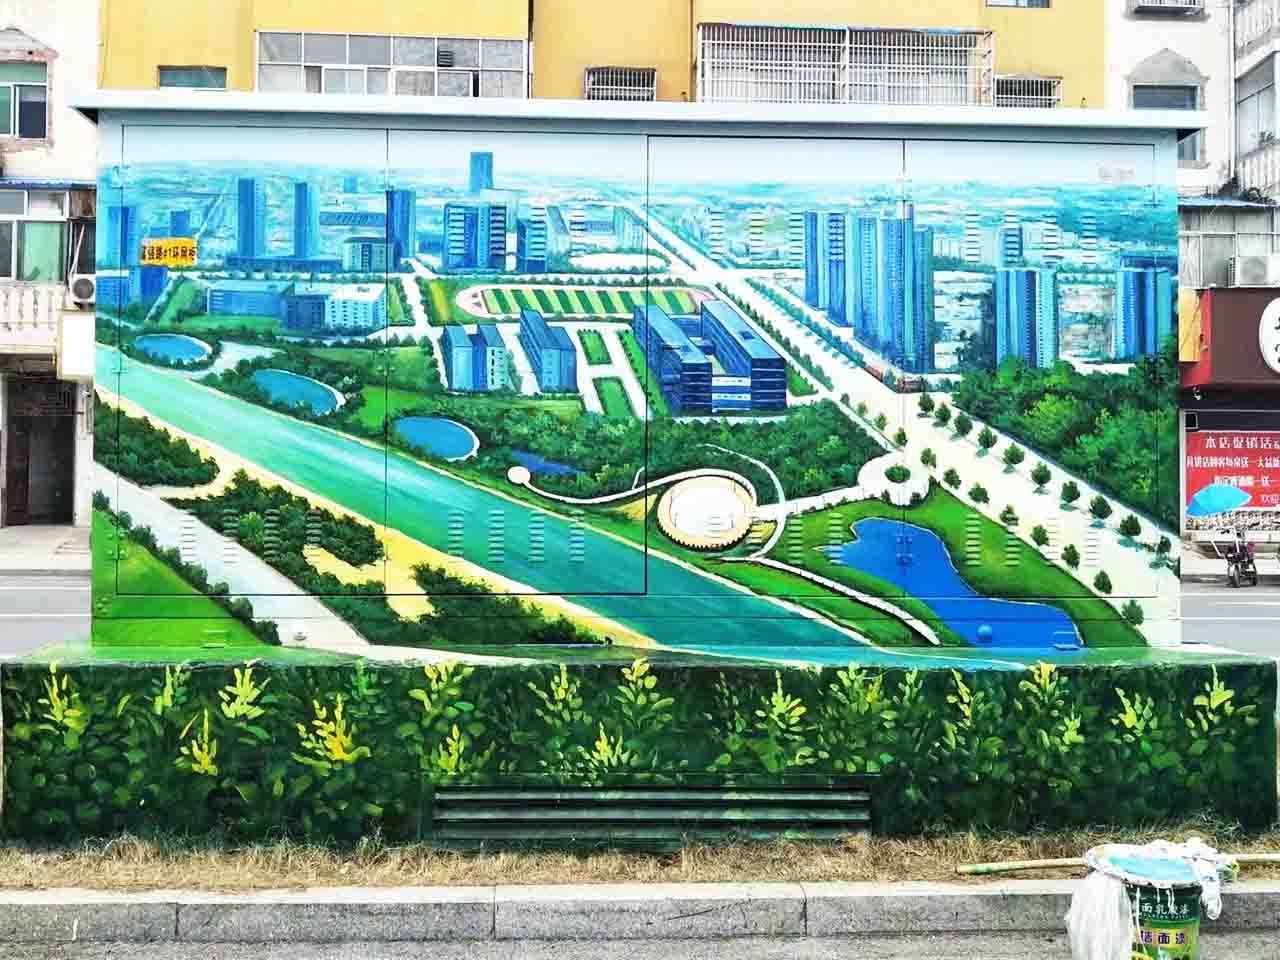 市政景区街道配变电箱写实城市风景创意墙绘壁画彩绘涂鸦手绘成都澜泉文化